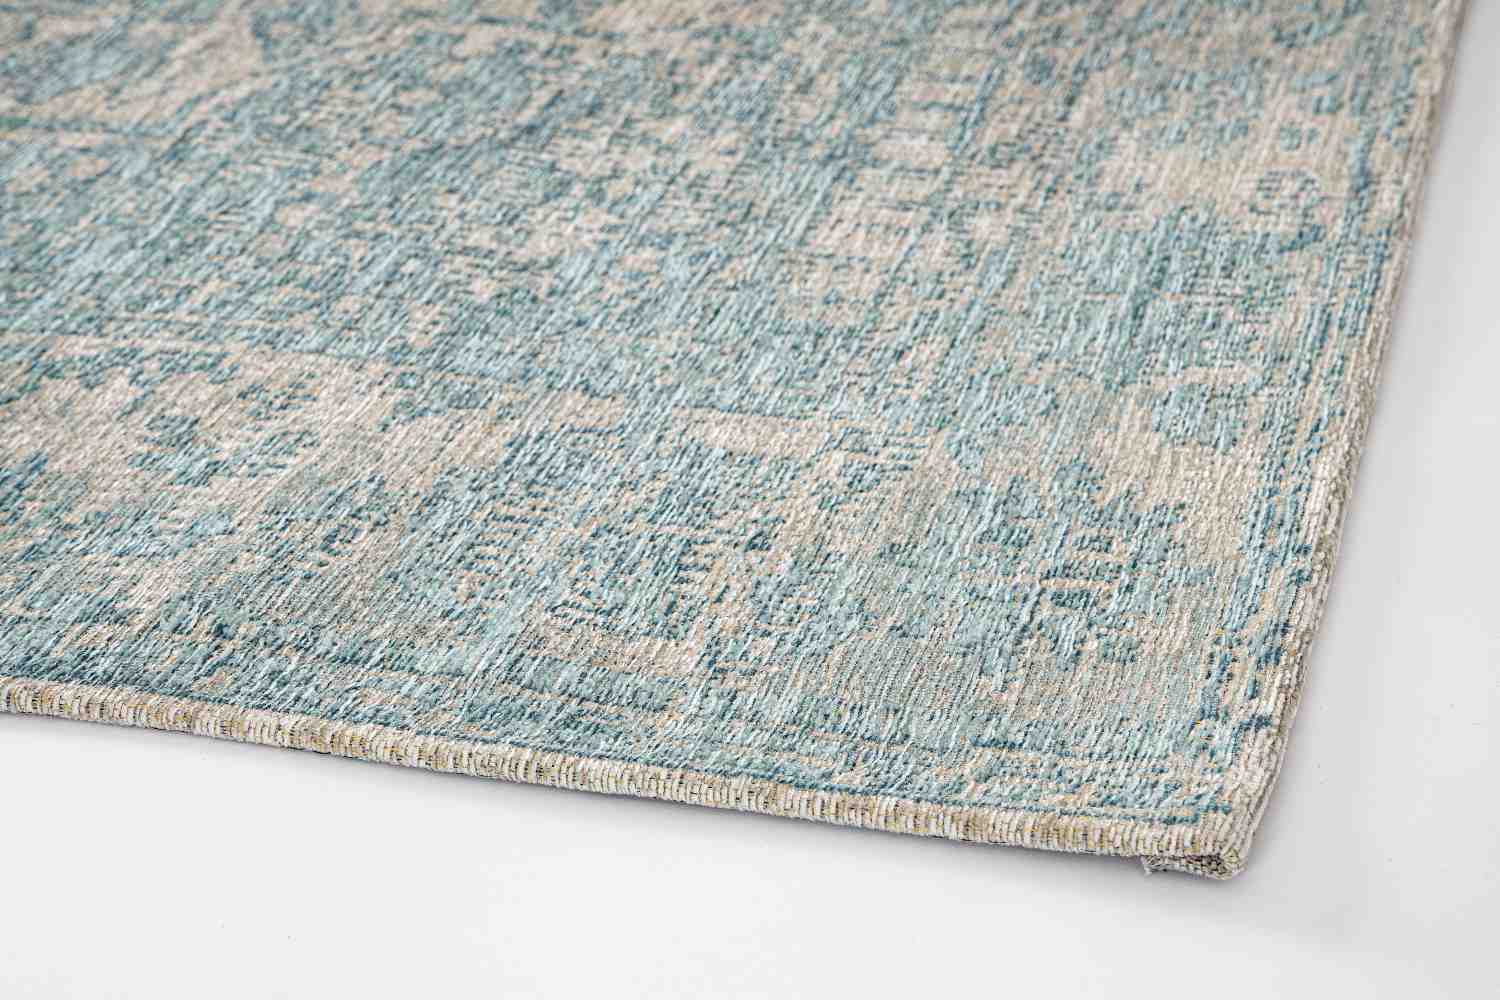 Der Teppich Rexa überzeugt mit seinem klassischen Design. Gefertigt wurde die Vorderseite aus 50% Chenille, 30% Polyester und 20% Baumwolle, die Rückseite aus Latex. Der Teppich besitzt einen hellblauen Farbton und die Maße von 155x230 cm.